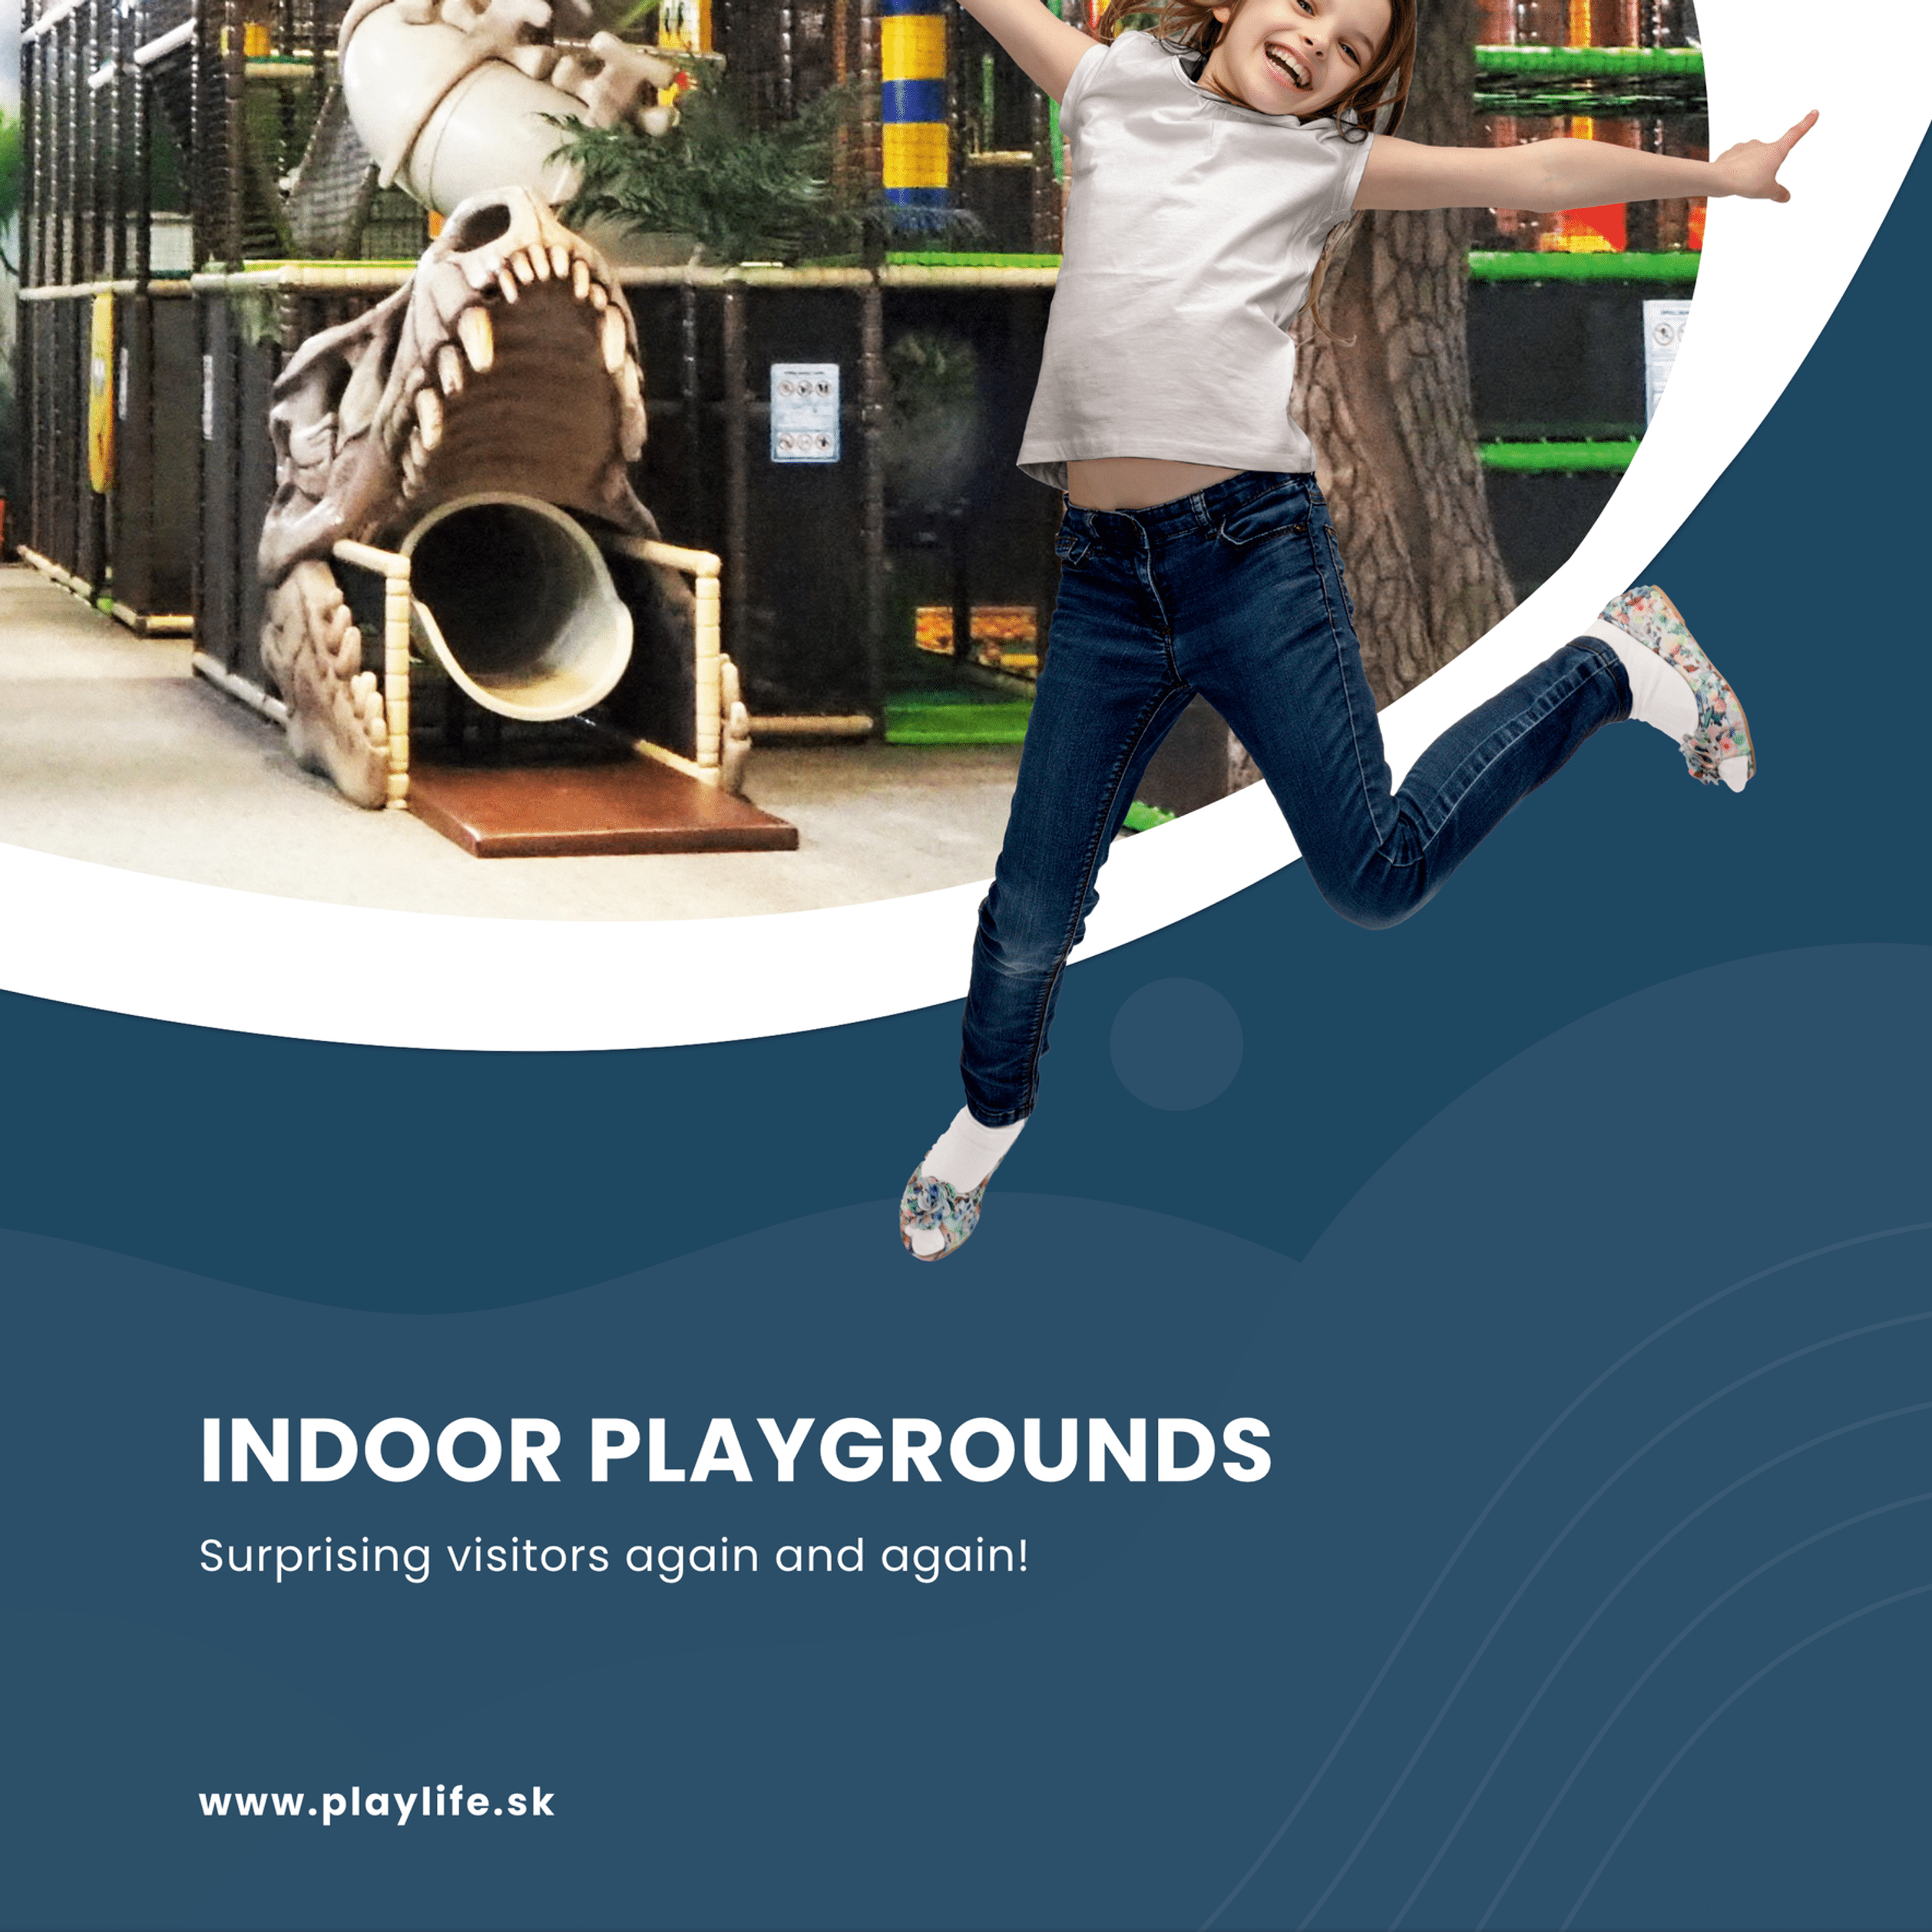 playlife-sk-en-indoor-playgrounds-03-2022-druck.png